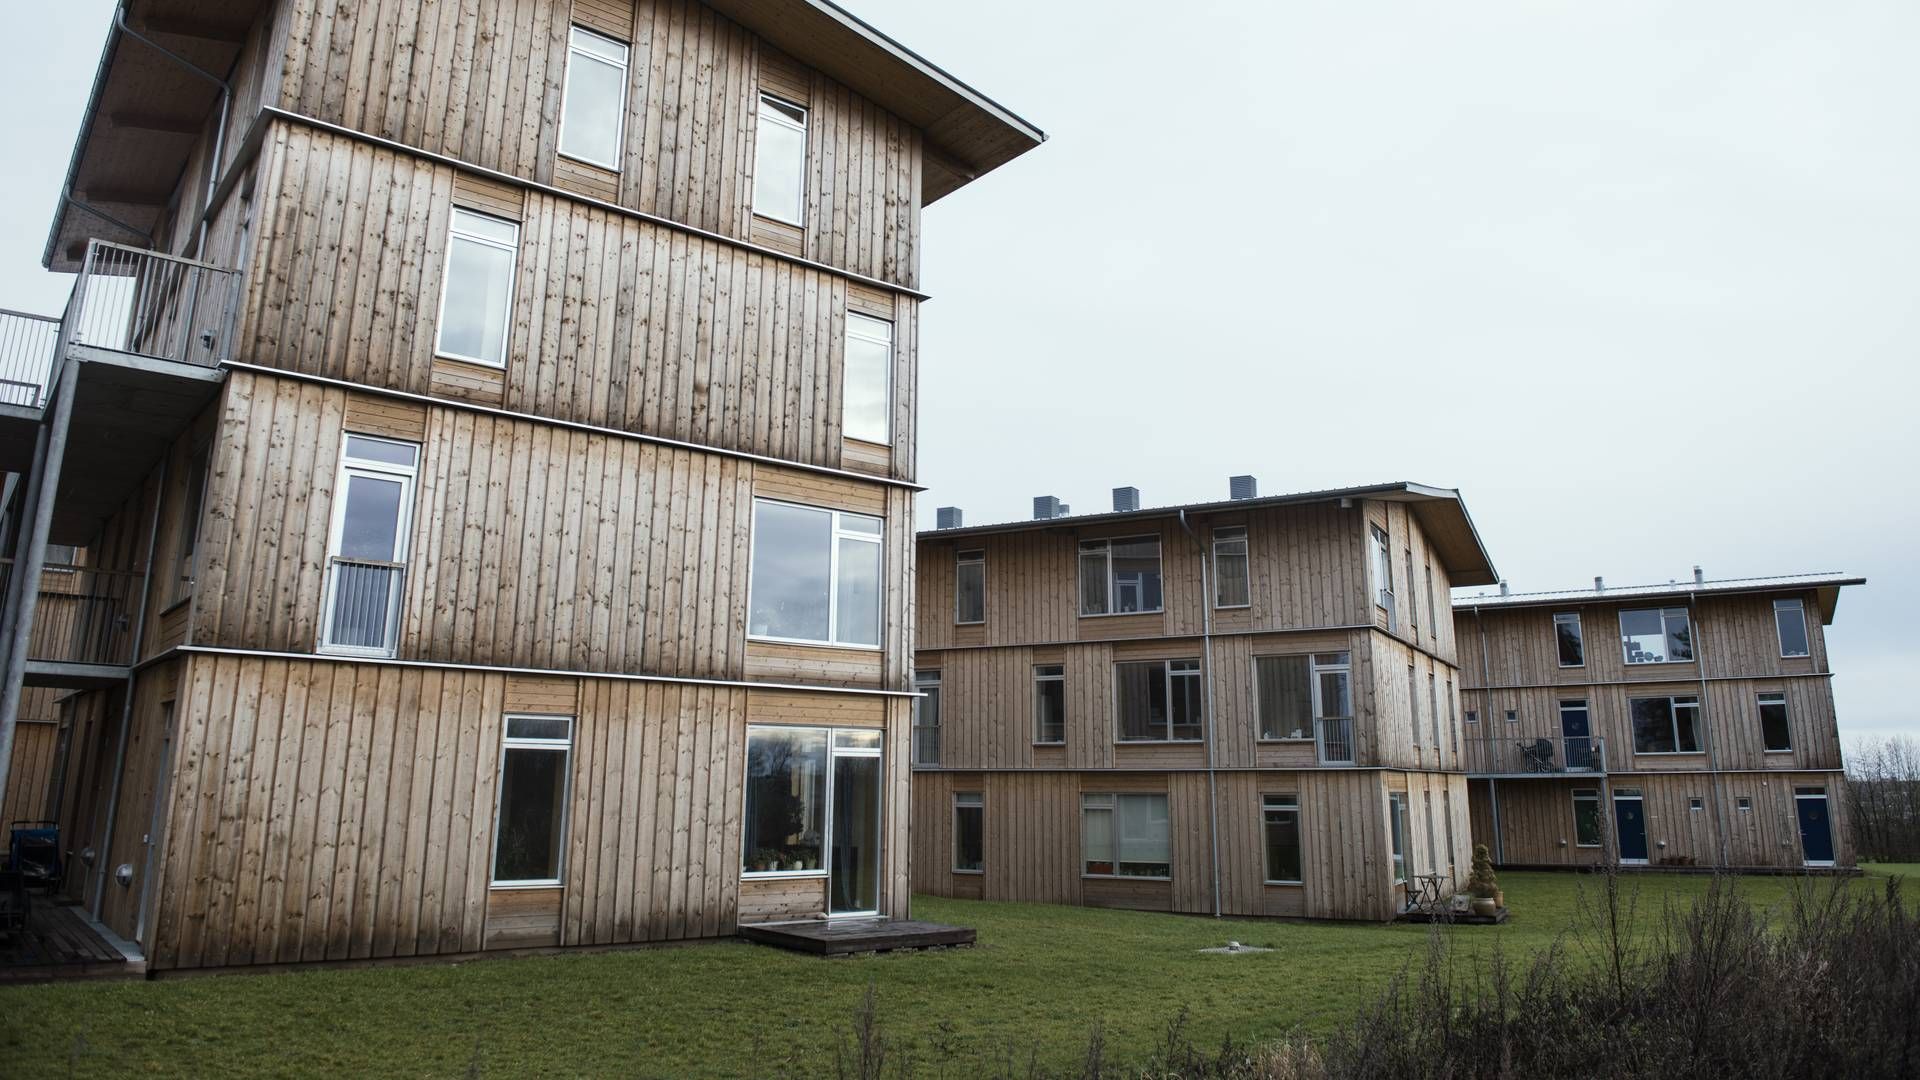 "Grundlæggende bæredygtighedscertificerer Bygningsstyrelsen ikke byggerier af egen drift, fordi det er udgiftsdrivende," fortæller pressechef Carsten Engedal på vegne af styrelsen. | Foto: Morten Lau-Nielsen/JPA